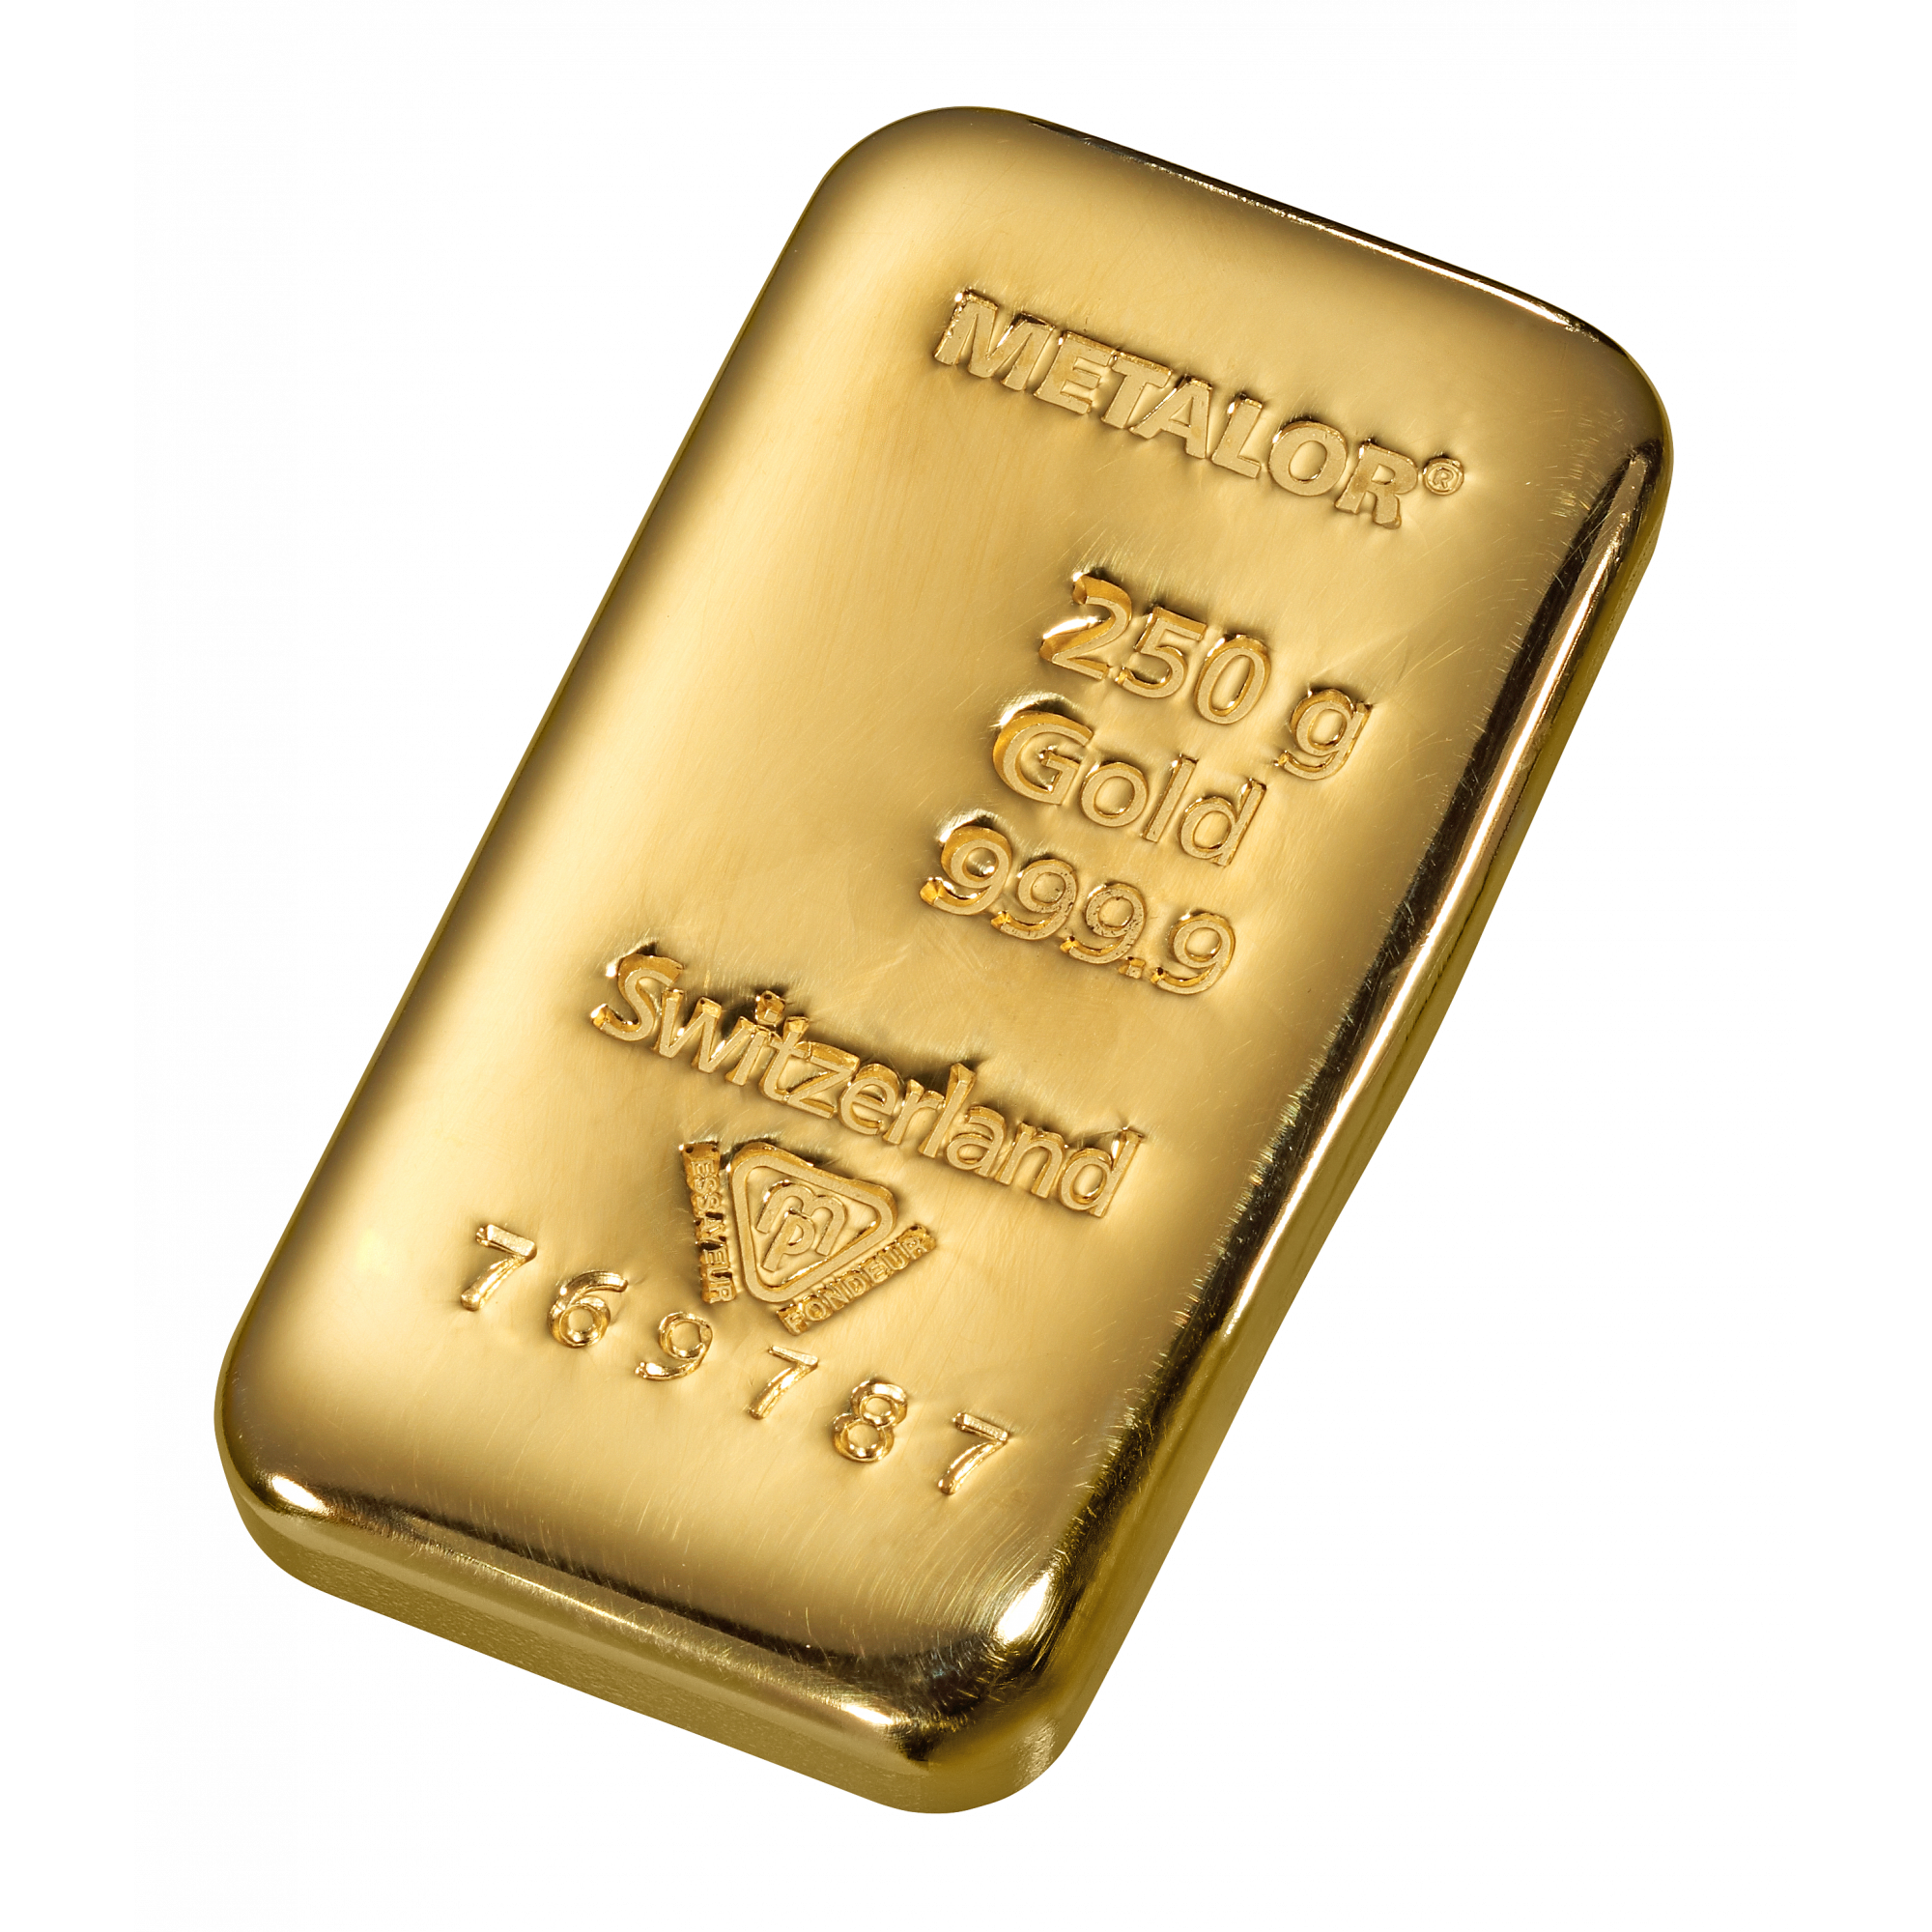 welvaart oplichter onduidelijk 250 gr. goudbaar - Aankoop en verkoop goudprijs - beleggen in goud